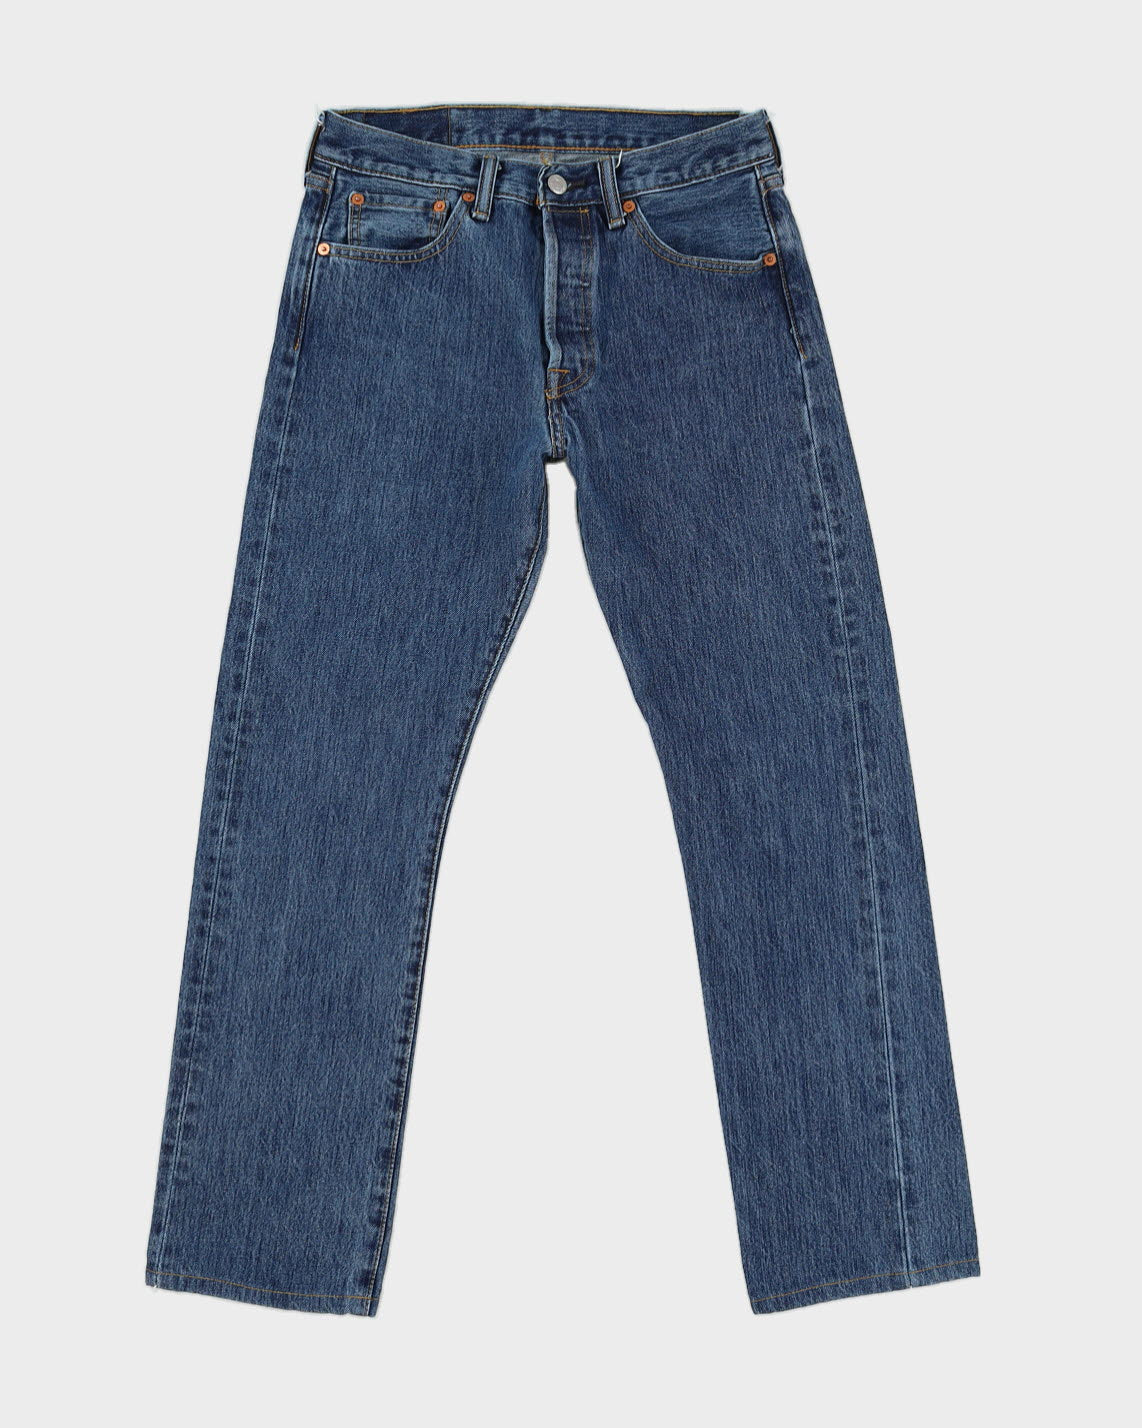 Levi's 501 Blue Jeans - W29 L29